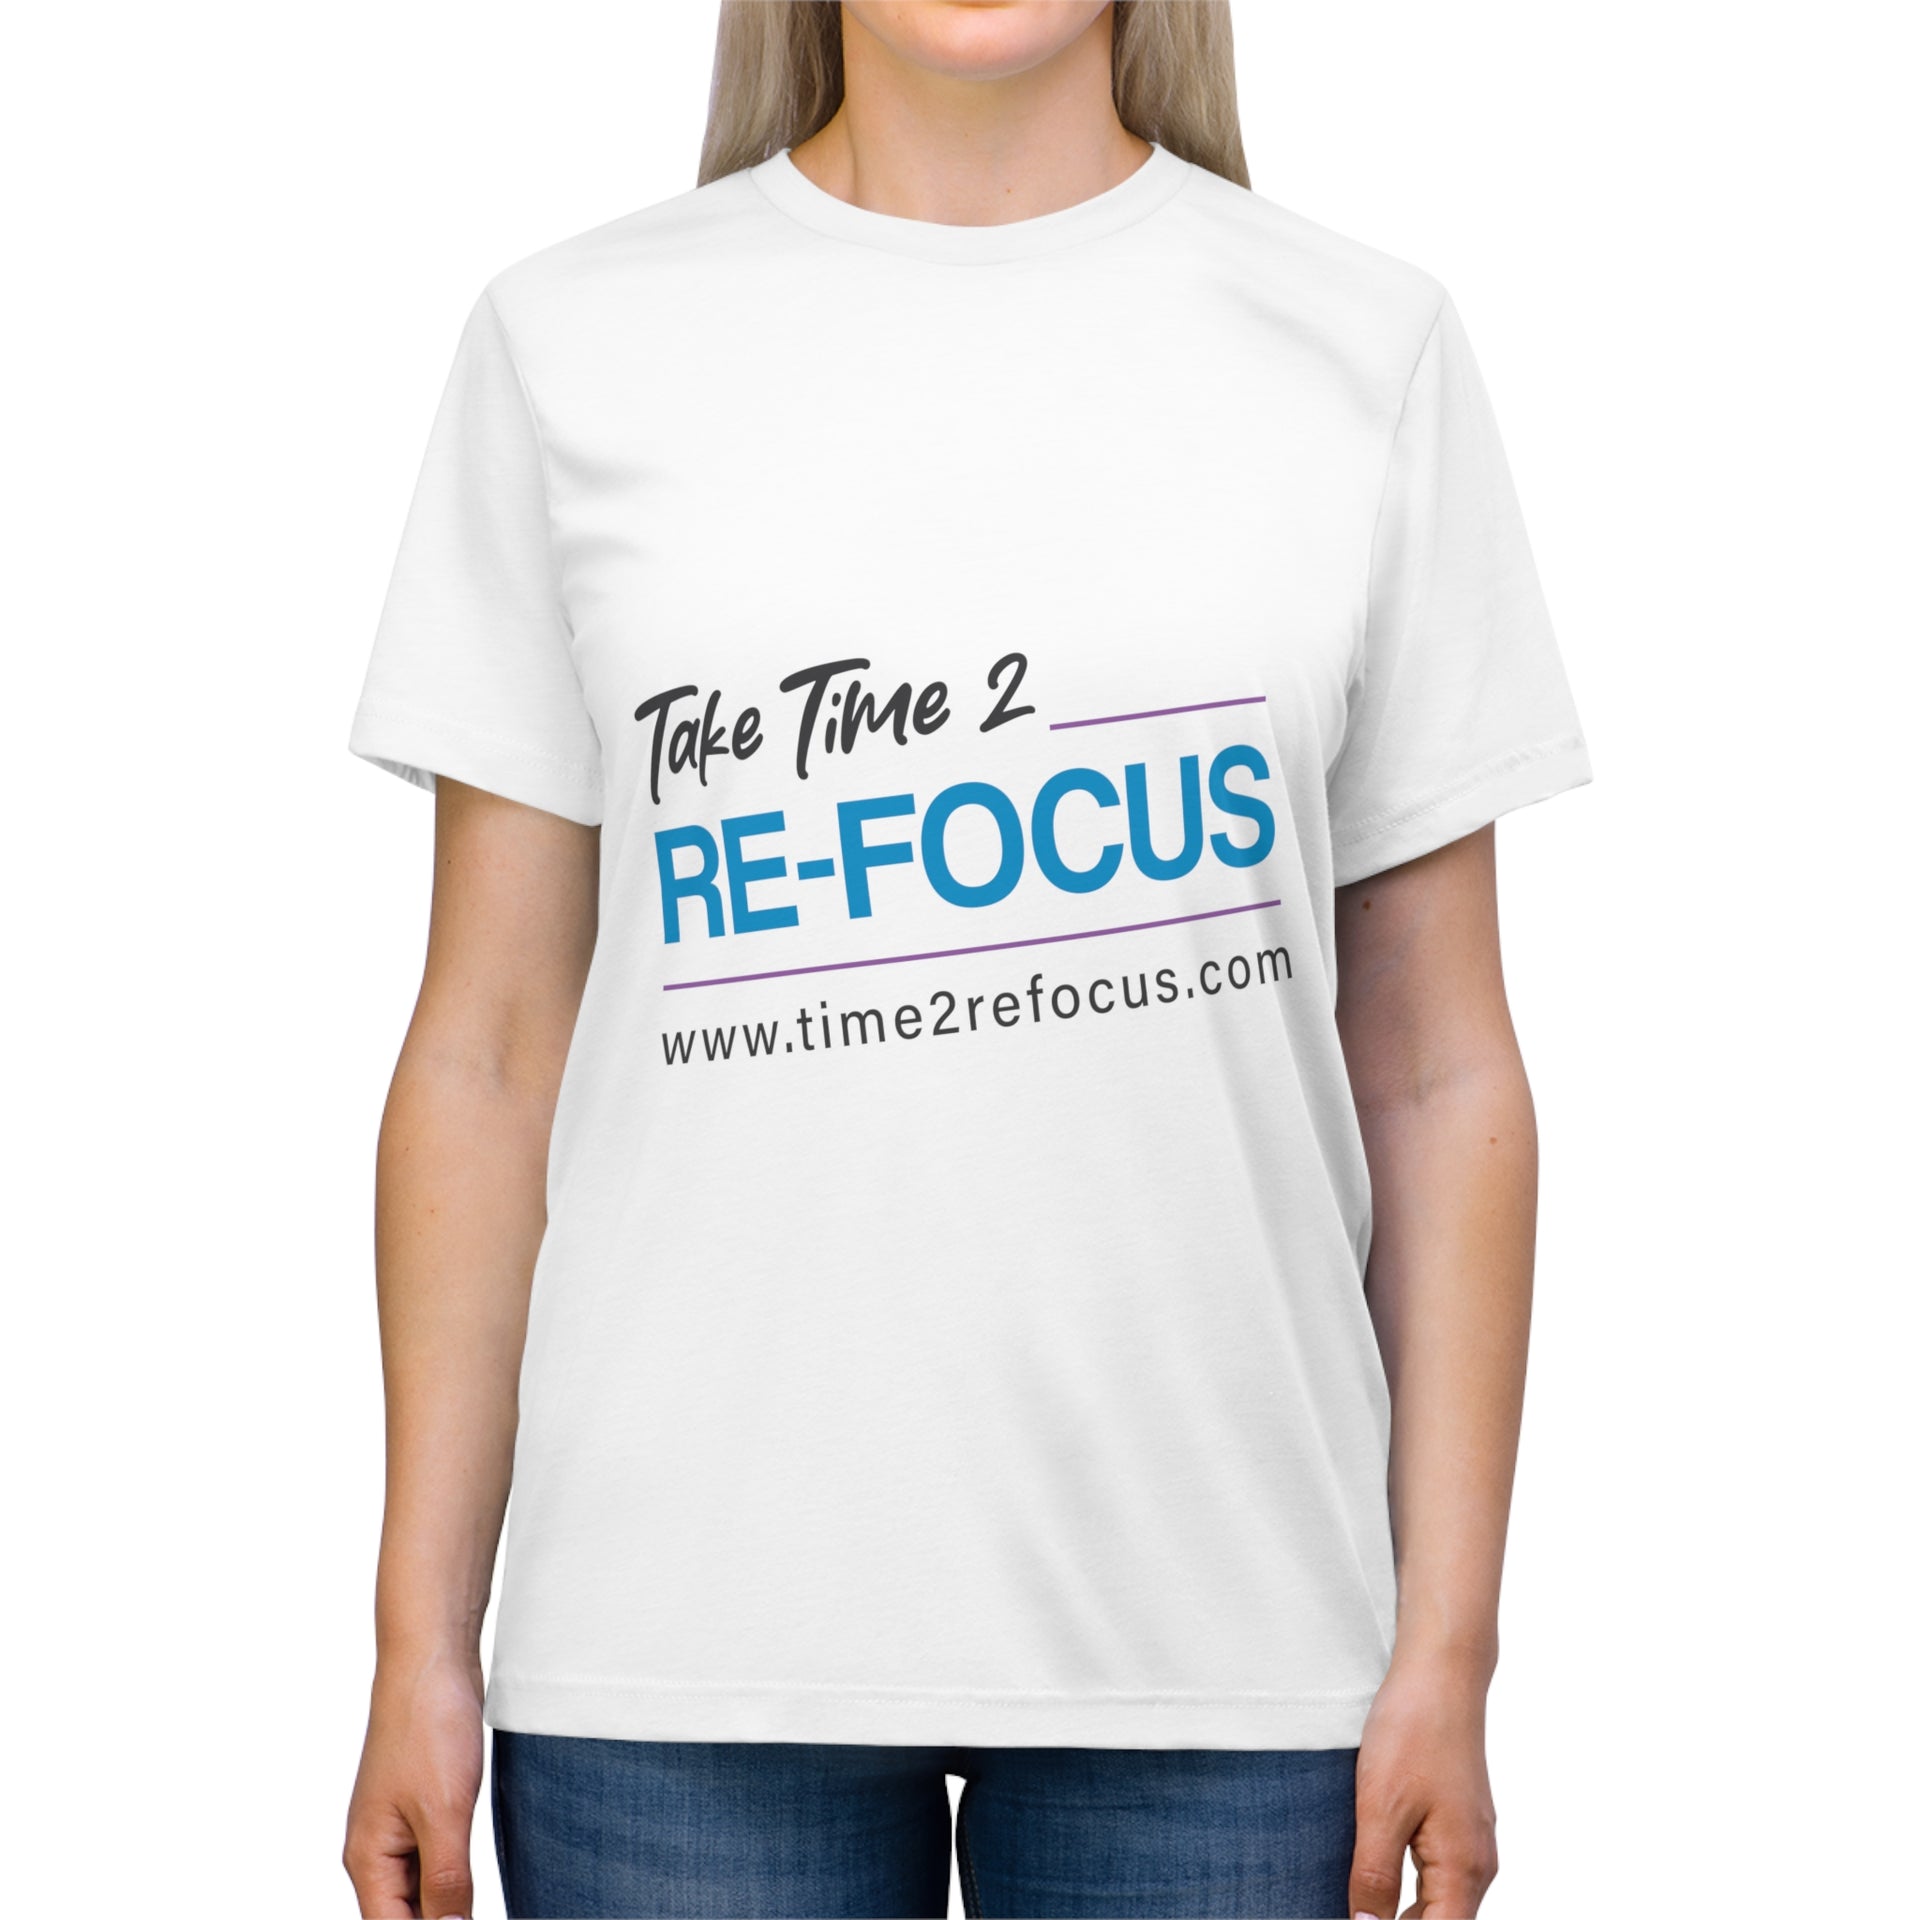 Take Time 2 RE-FOCUS T-Shirt